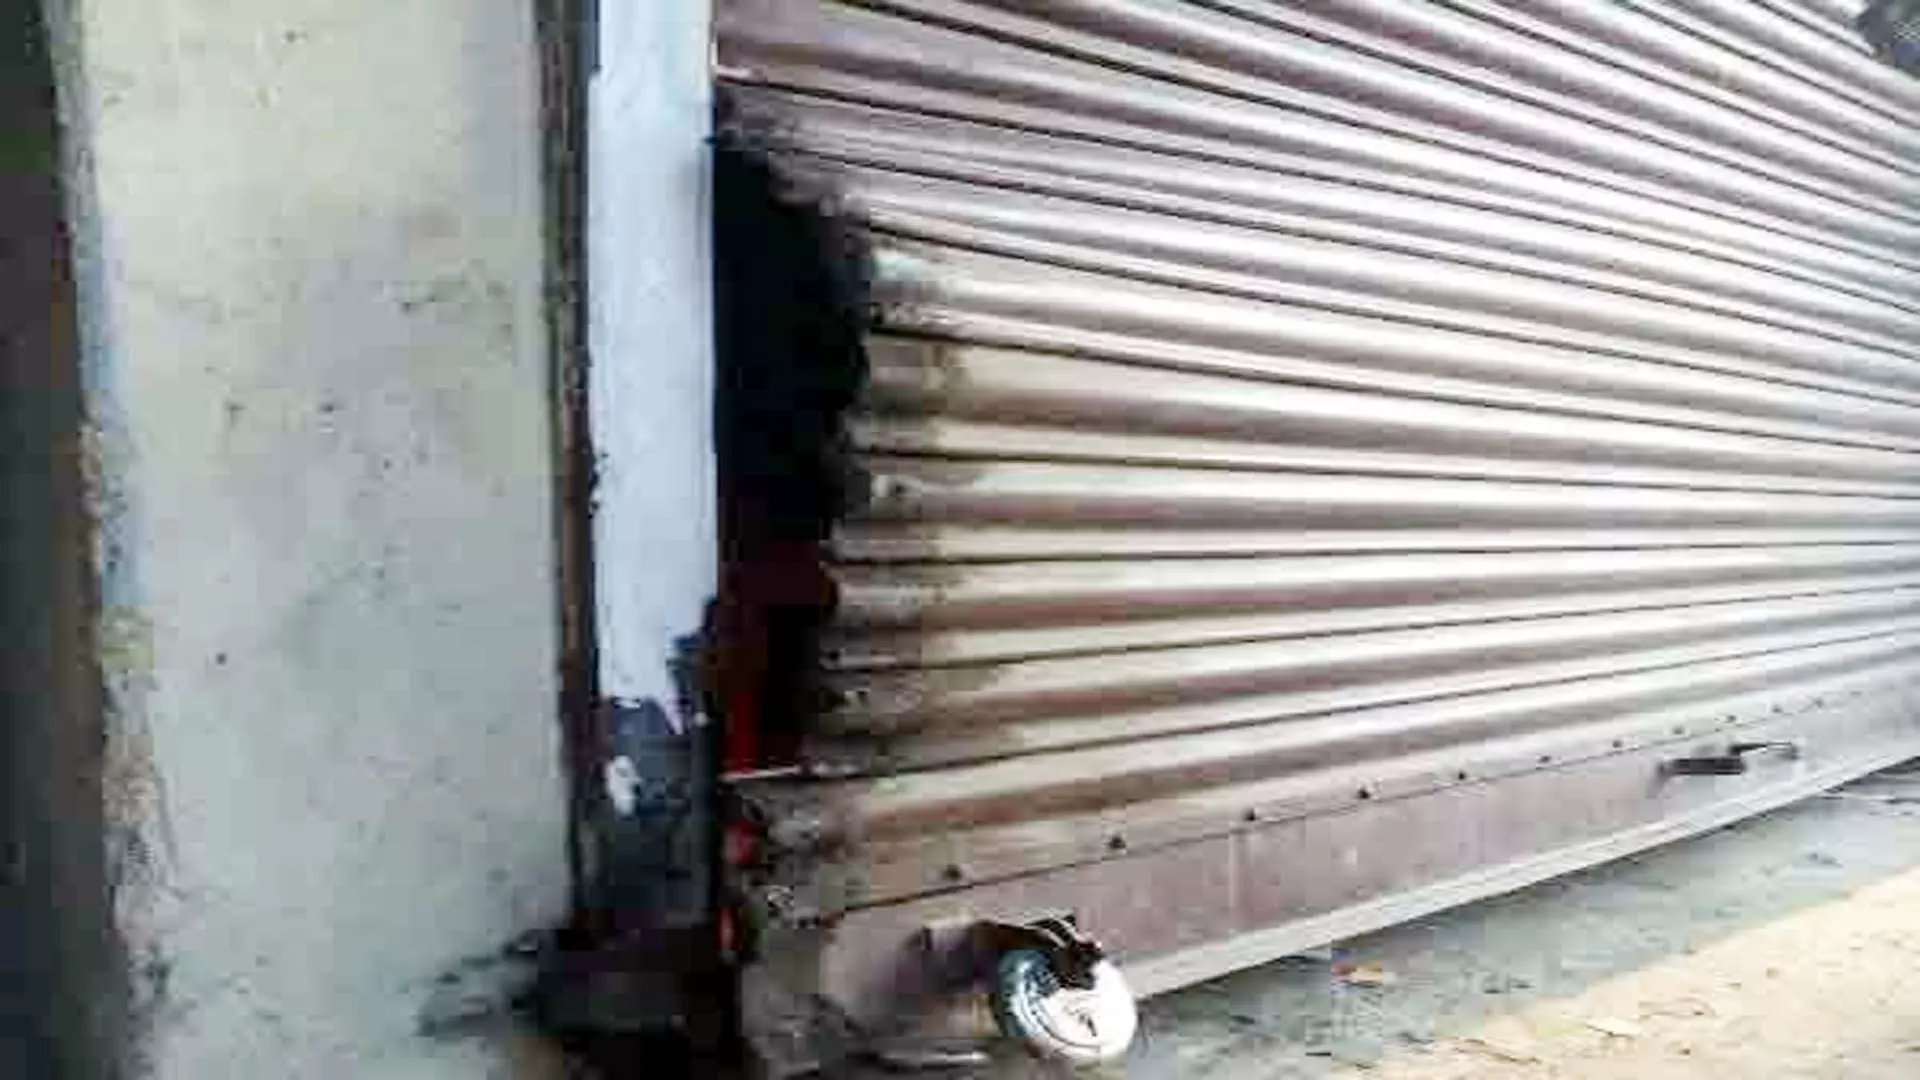 मोबाइल की दुकान का शटर काटकर लाखों के मोबाइल चोरी, घटना की रिपोर्ट दर्ज